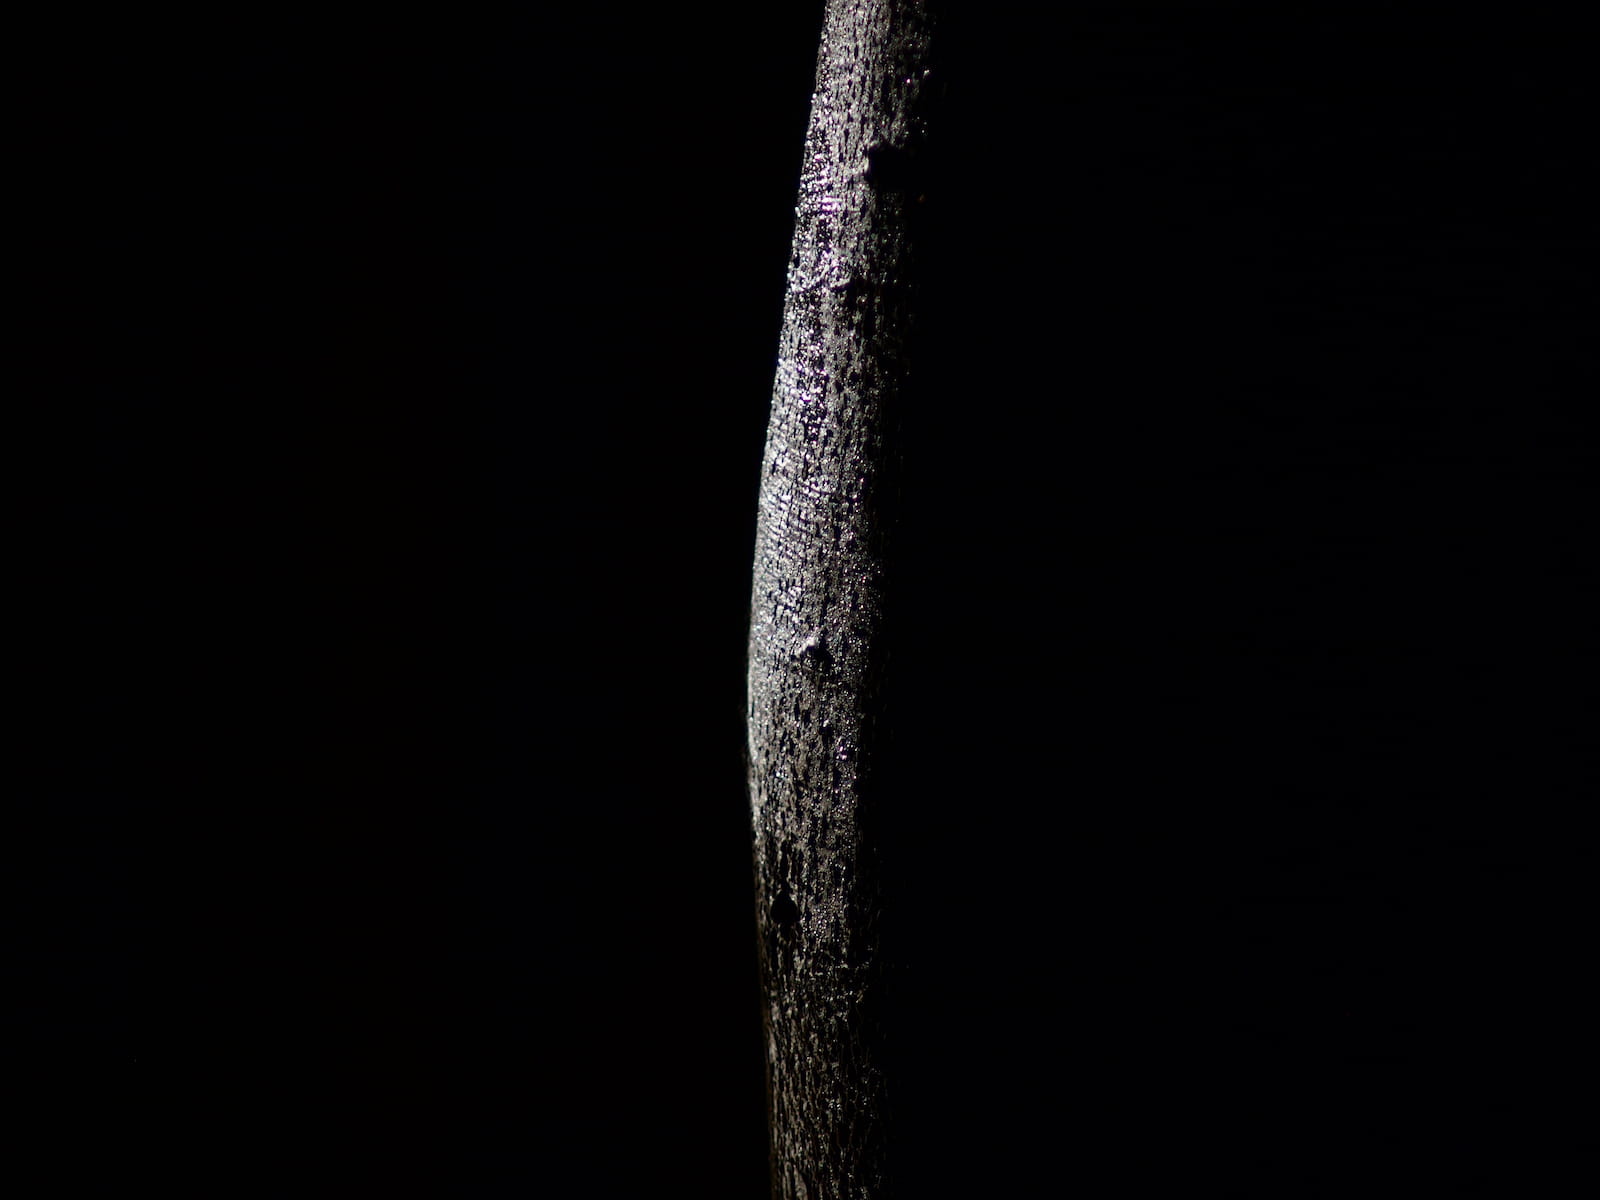 dark trunk detail